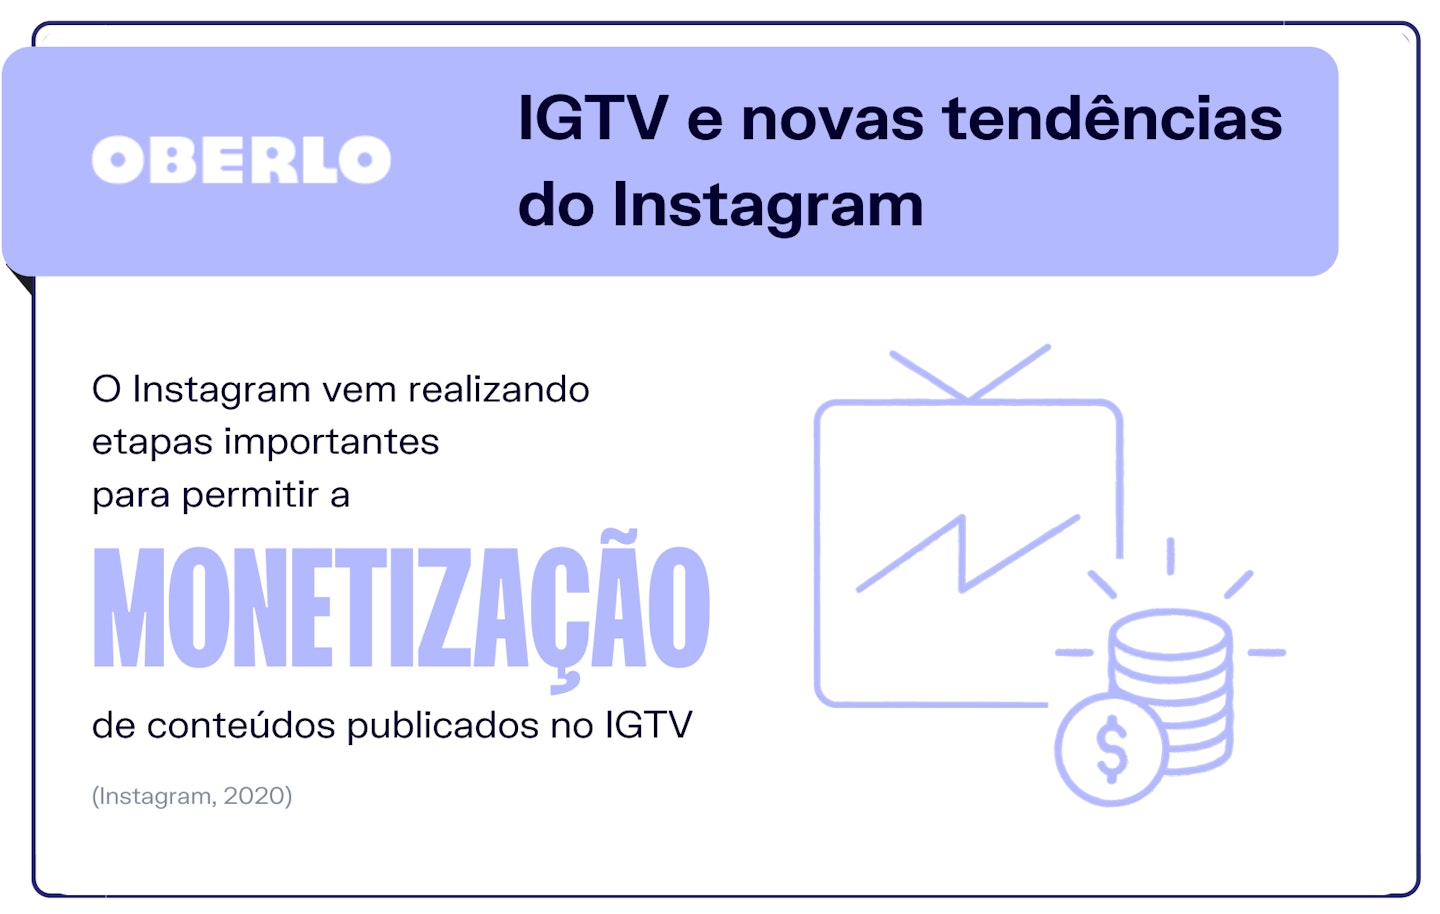 IGTV e novas tendências do Instagram